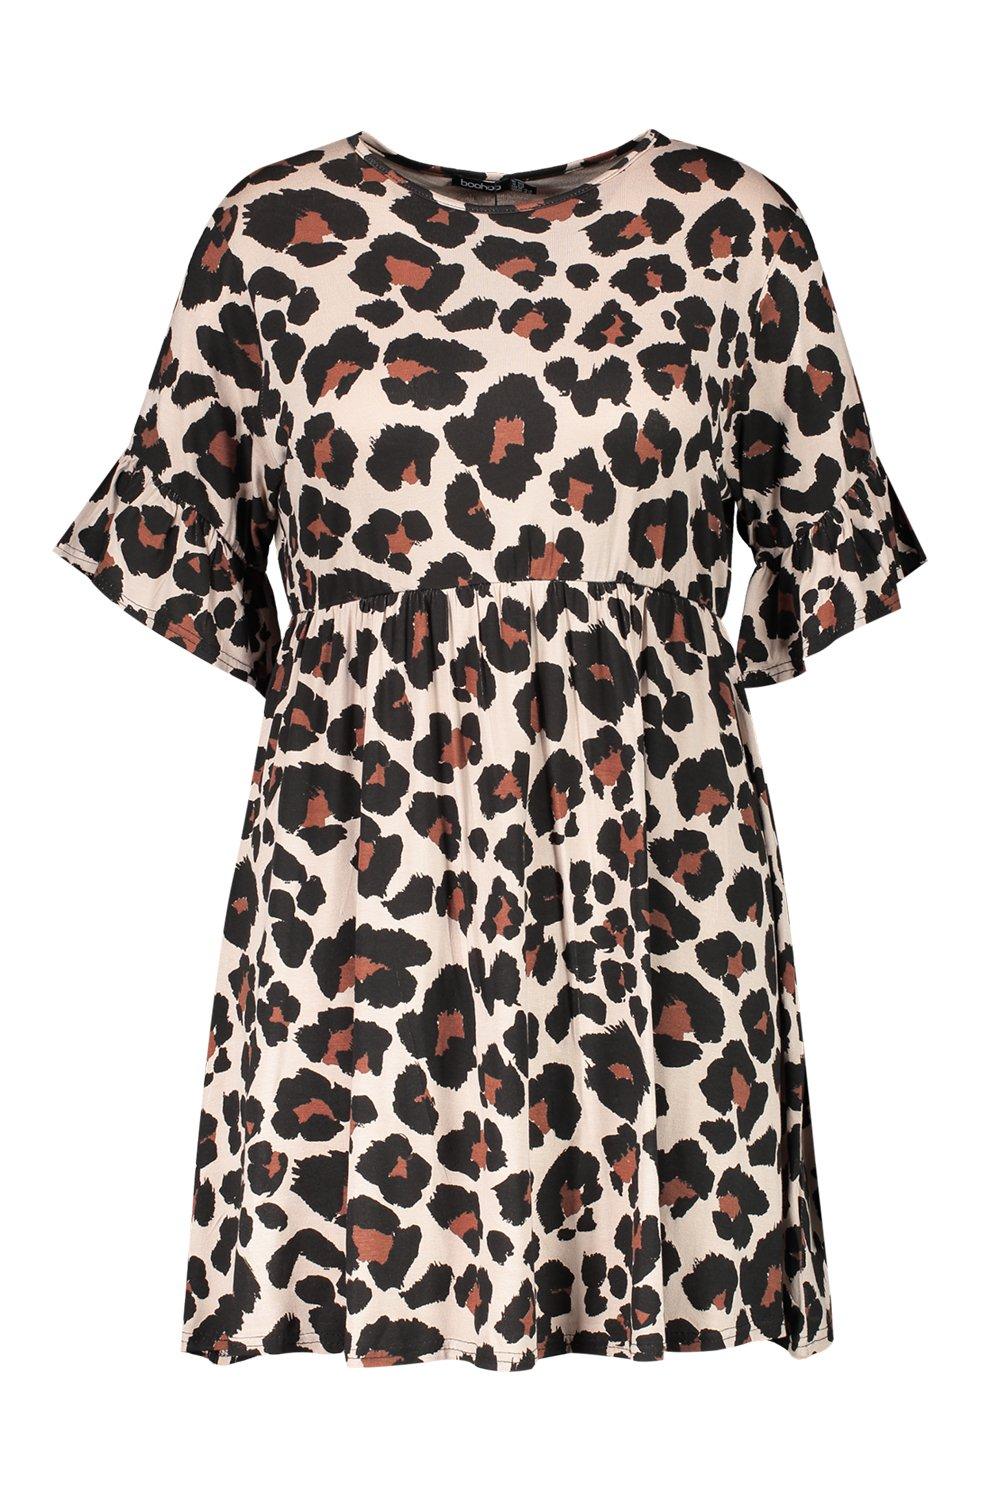 boohoo leopard print smock dress